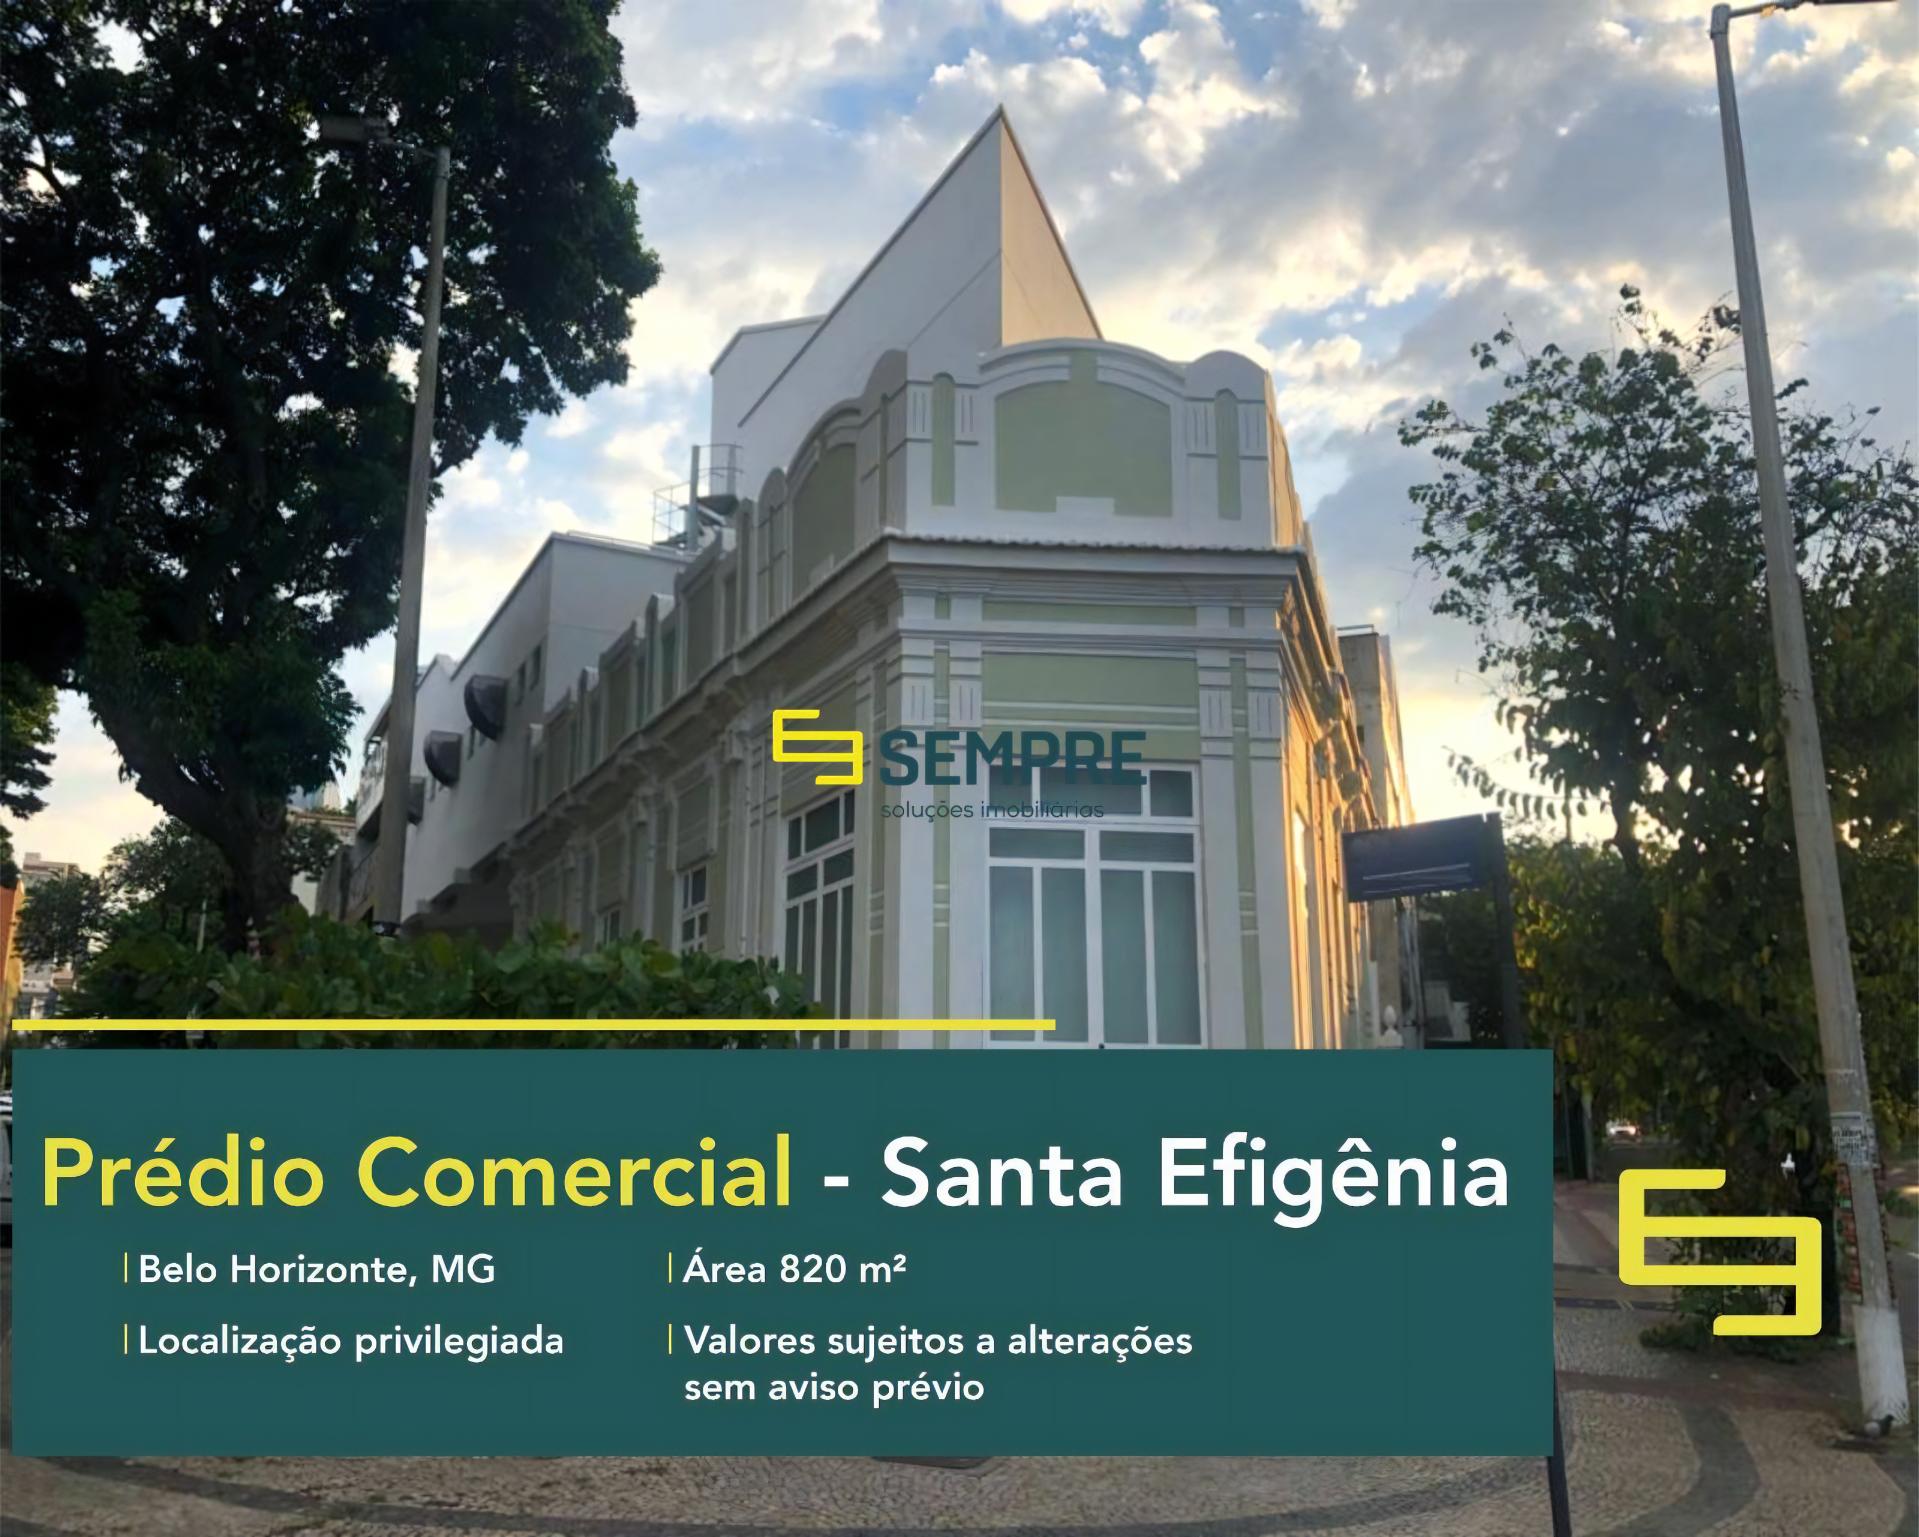 Prédio comercial para locação em BH - Santa Efigênia, em excelente localização. O estabelecimento comercial conta com área de 820 m².